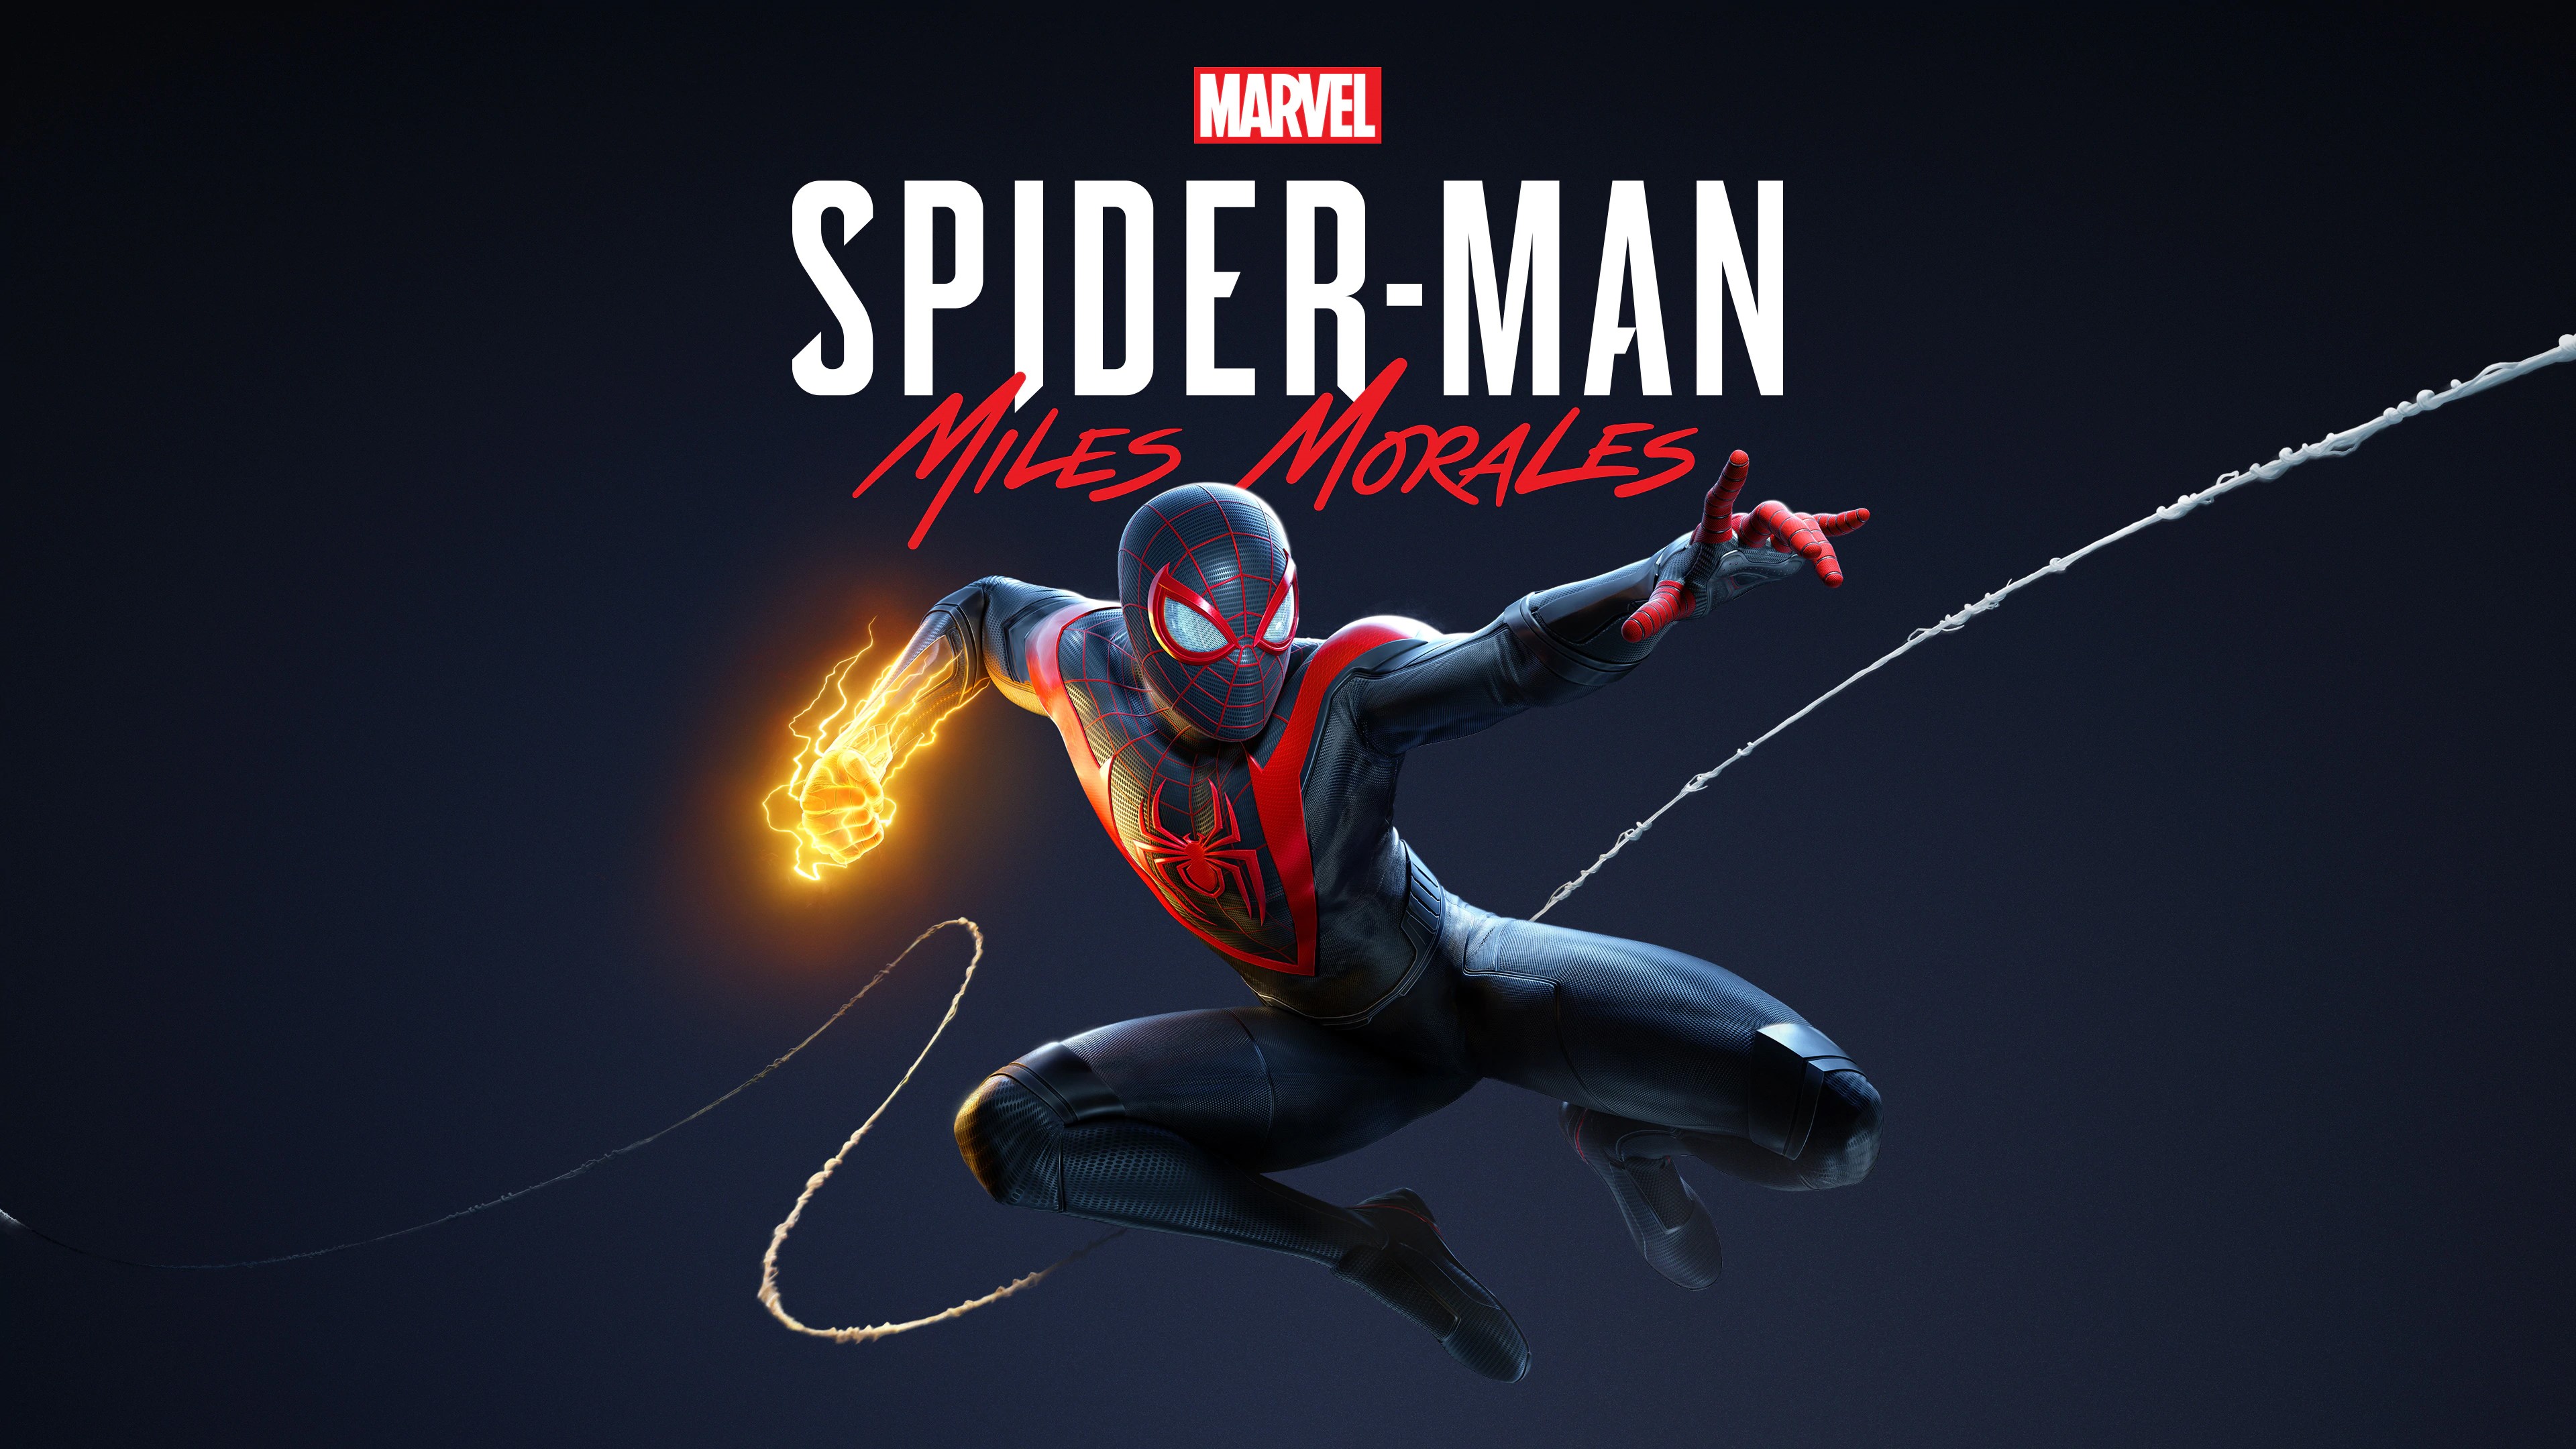 Marvel's Человек-паук /// Spider-Man: Miles Morales ( прохождение 11 )